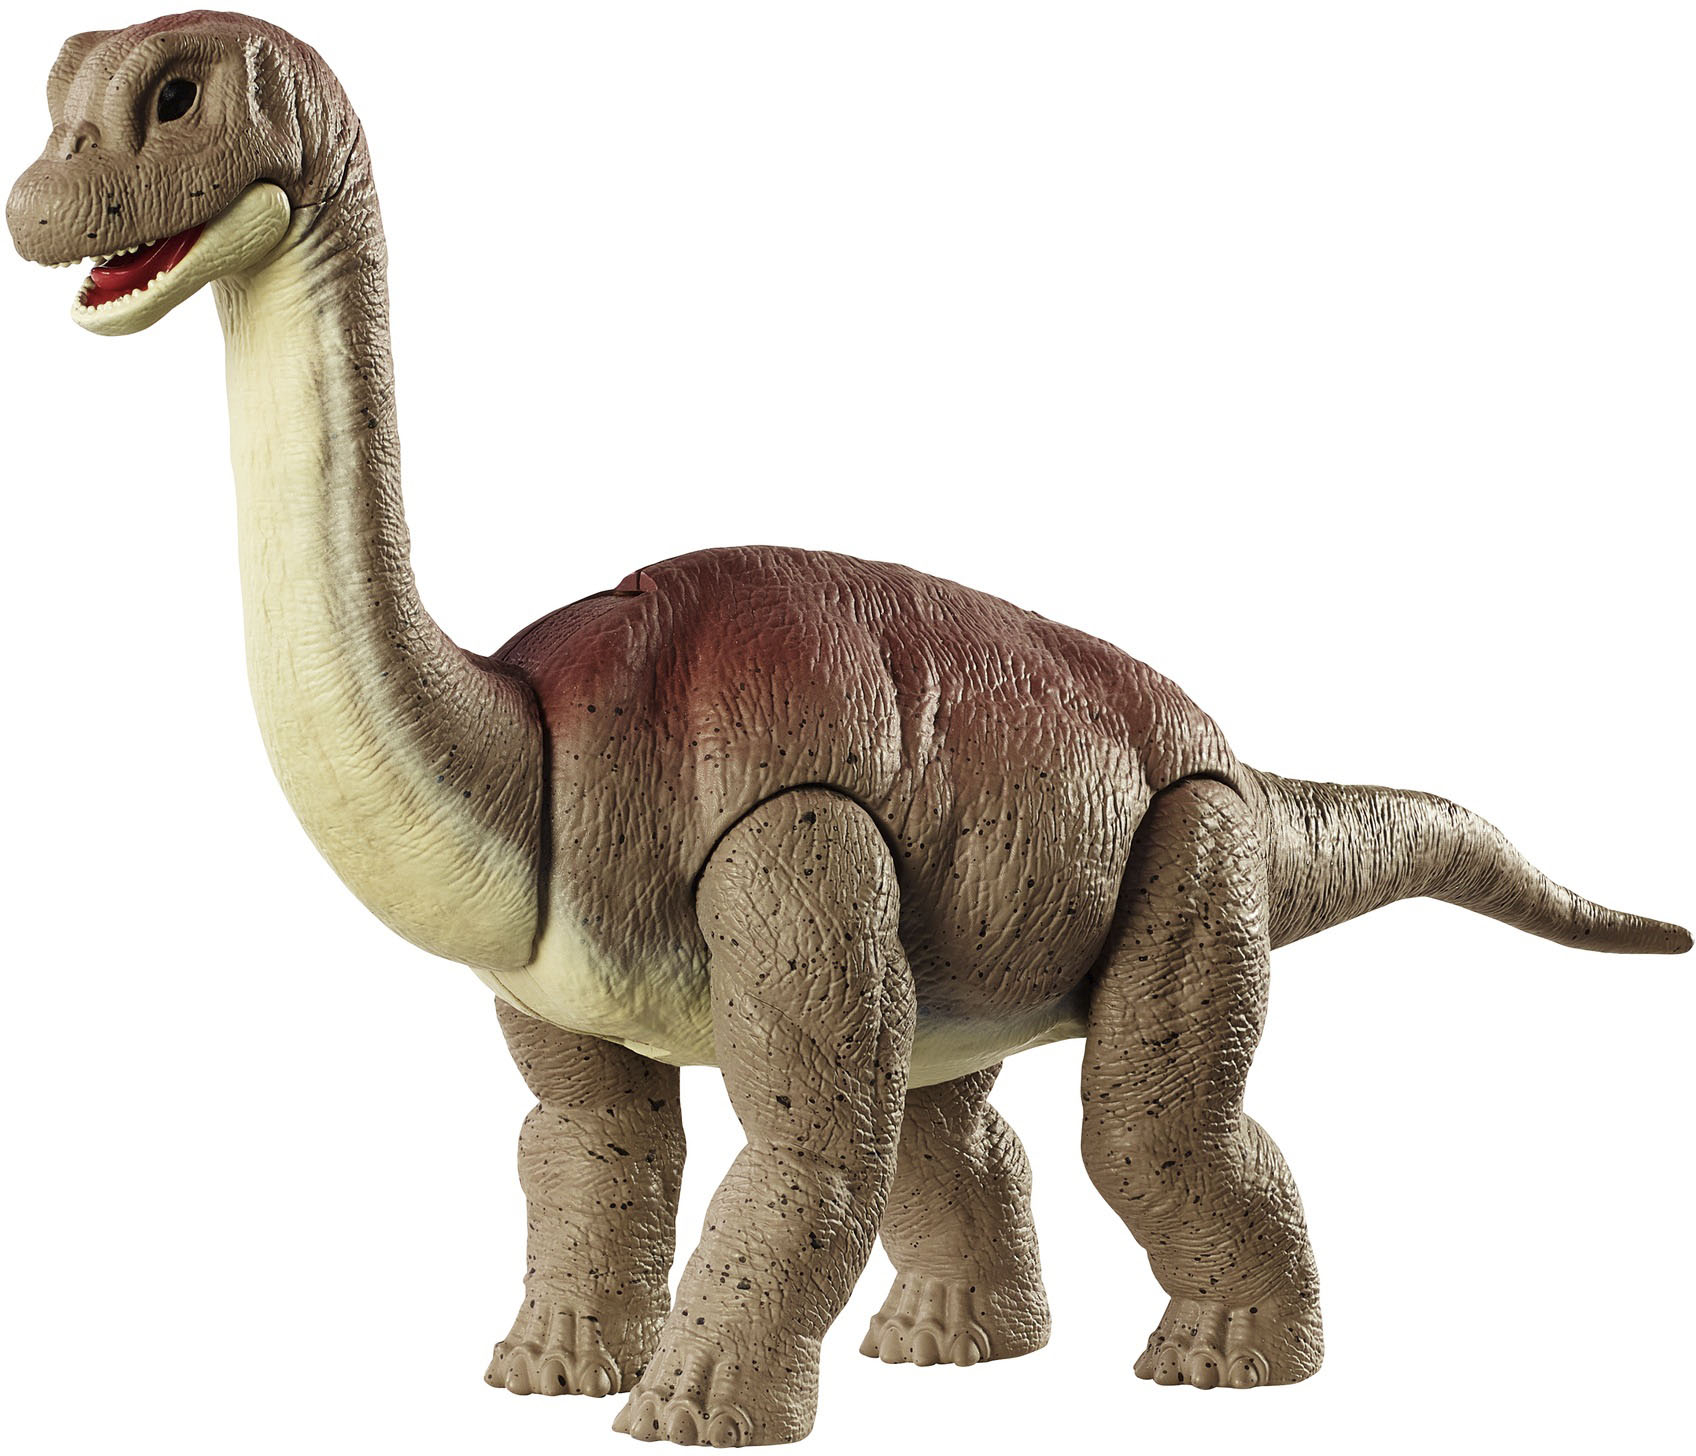 Jurassic World Danger Pack Dinosaur Action Figure Styles May Vary HLN49 -  Best Buy